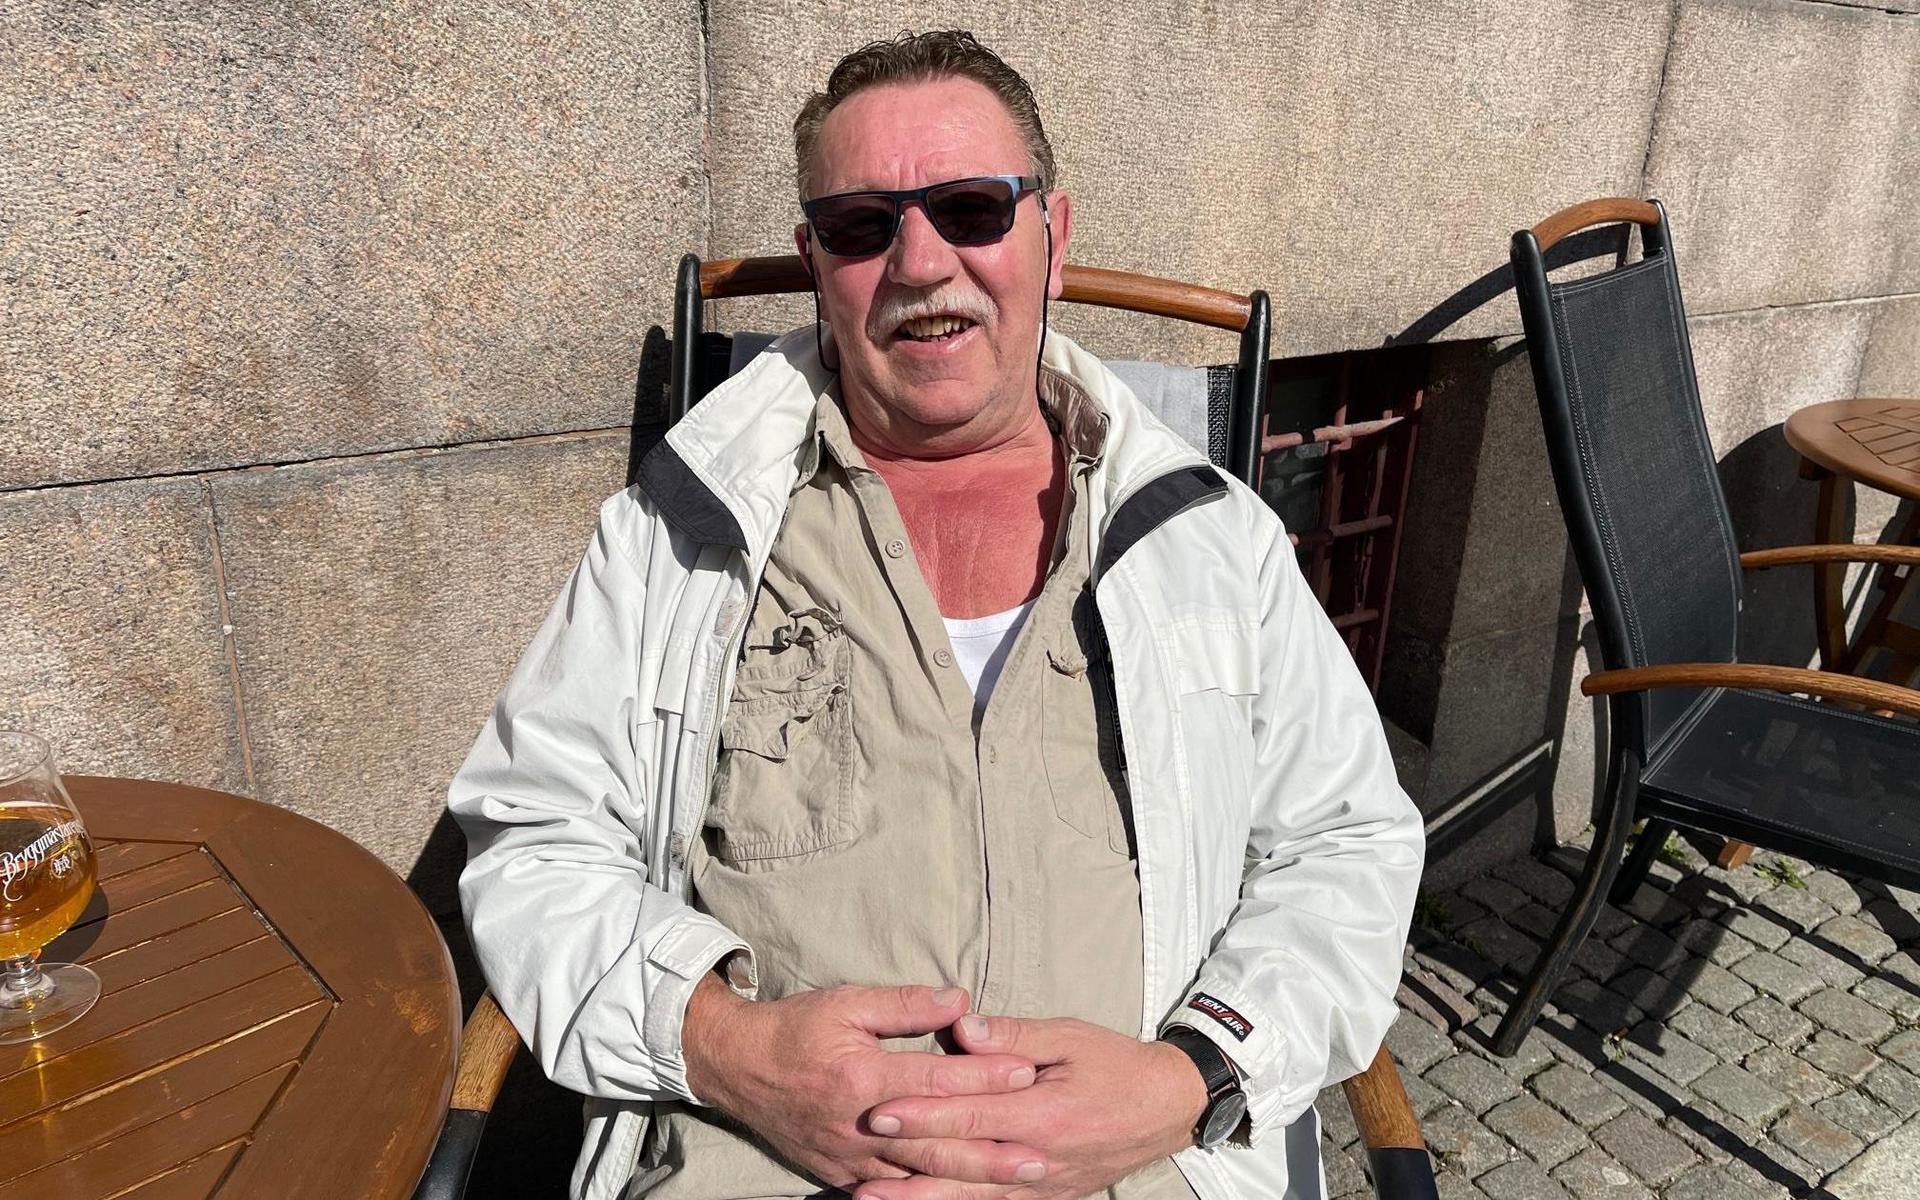 Janne Sörensson från Uddevalla: ”Vi ska vara ute så mycket som möjligt och njuta av det fina vädret.”